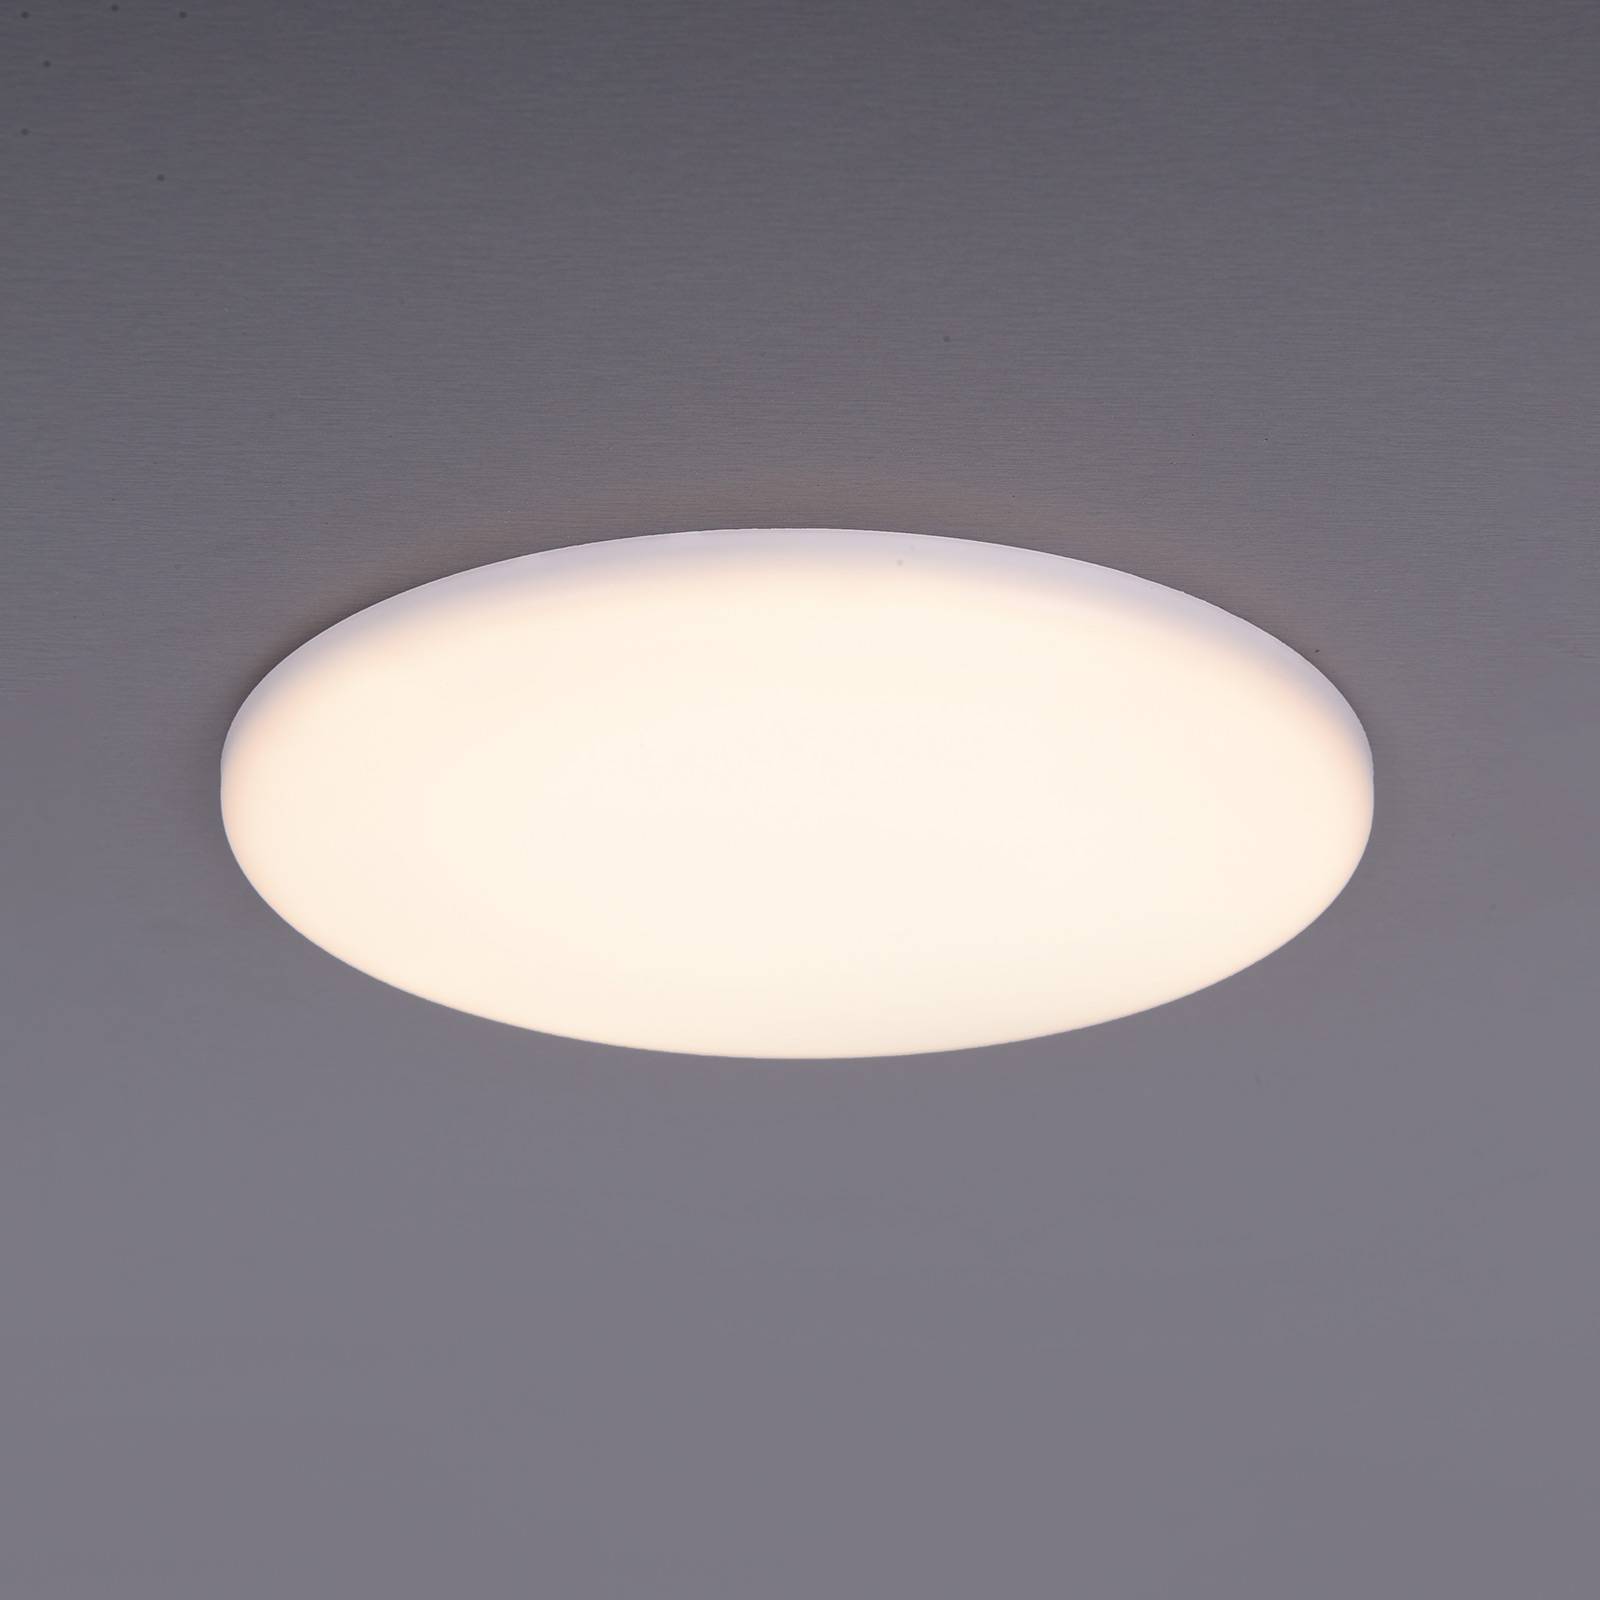 Image of Näve Lampe encastrable LED Sula, rond, IP66, Ø 15,5 cm 4003222874493